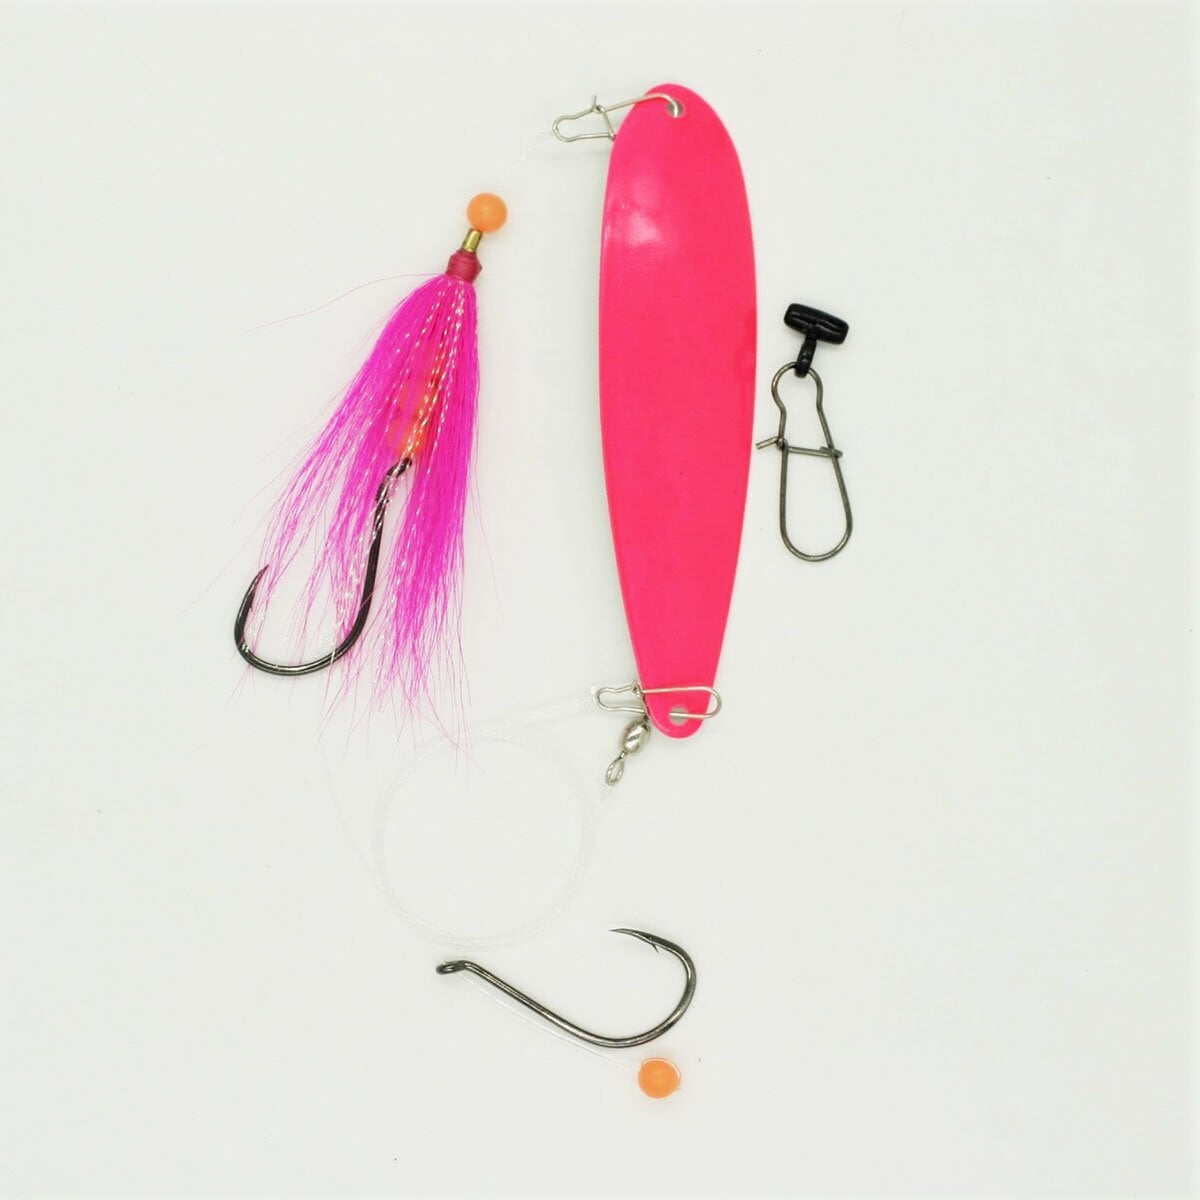 SeaSnare - Fluke Pro - Original Fish Finder Sliding Bottom Hook Spoon Rig Nantucket Series